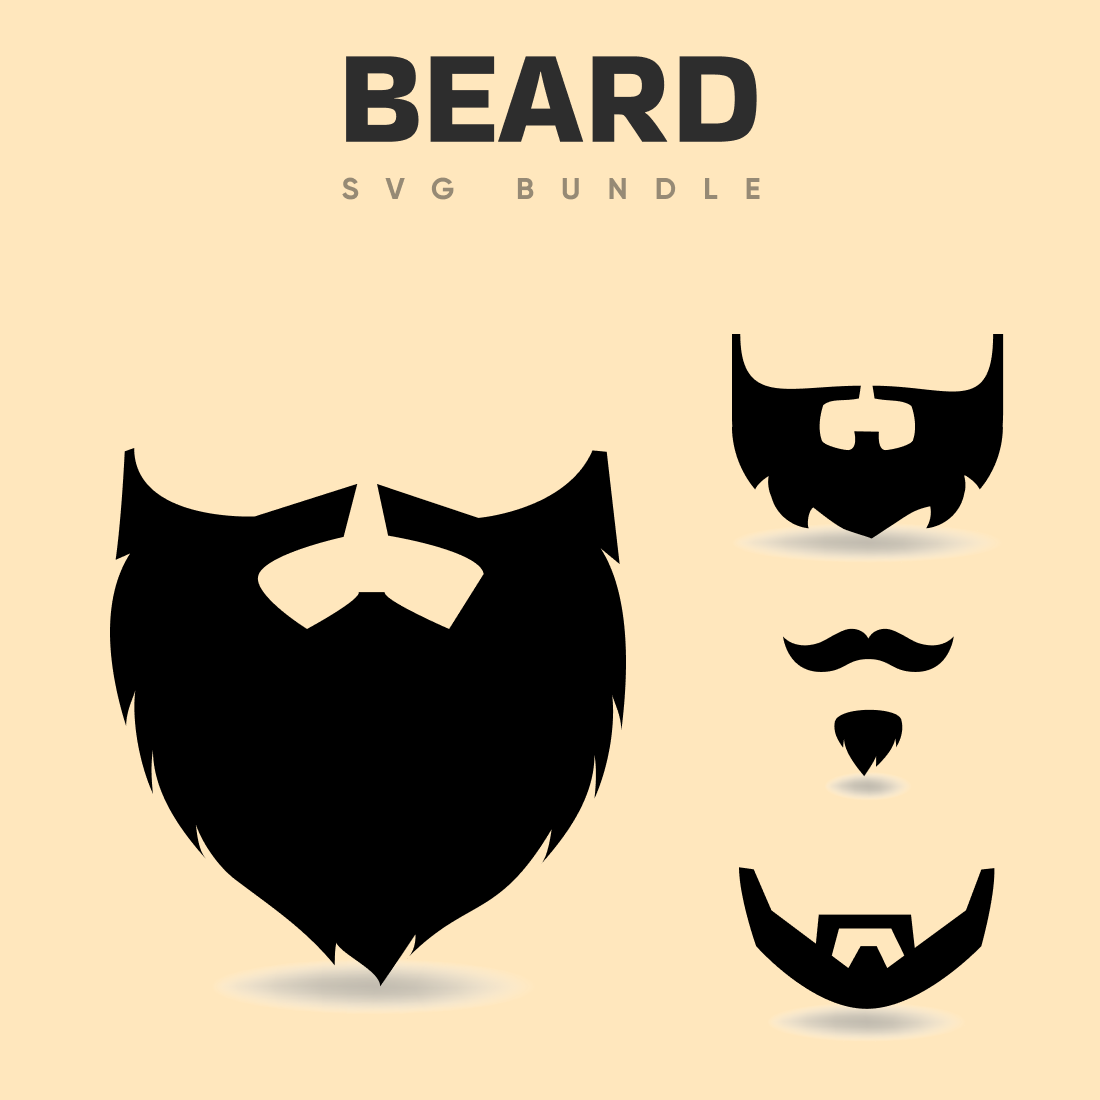 Beard SVG bundle.